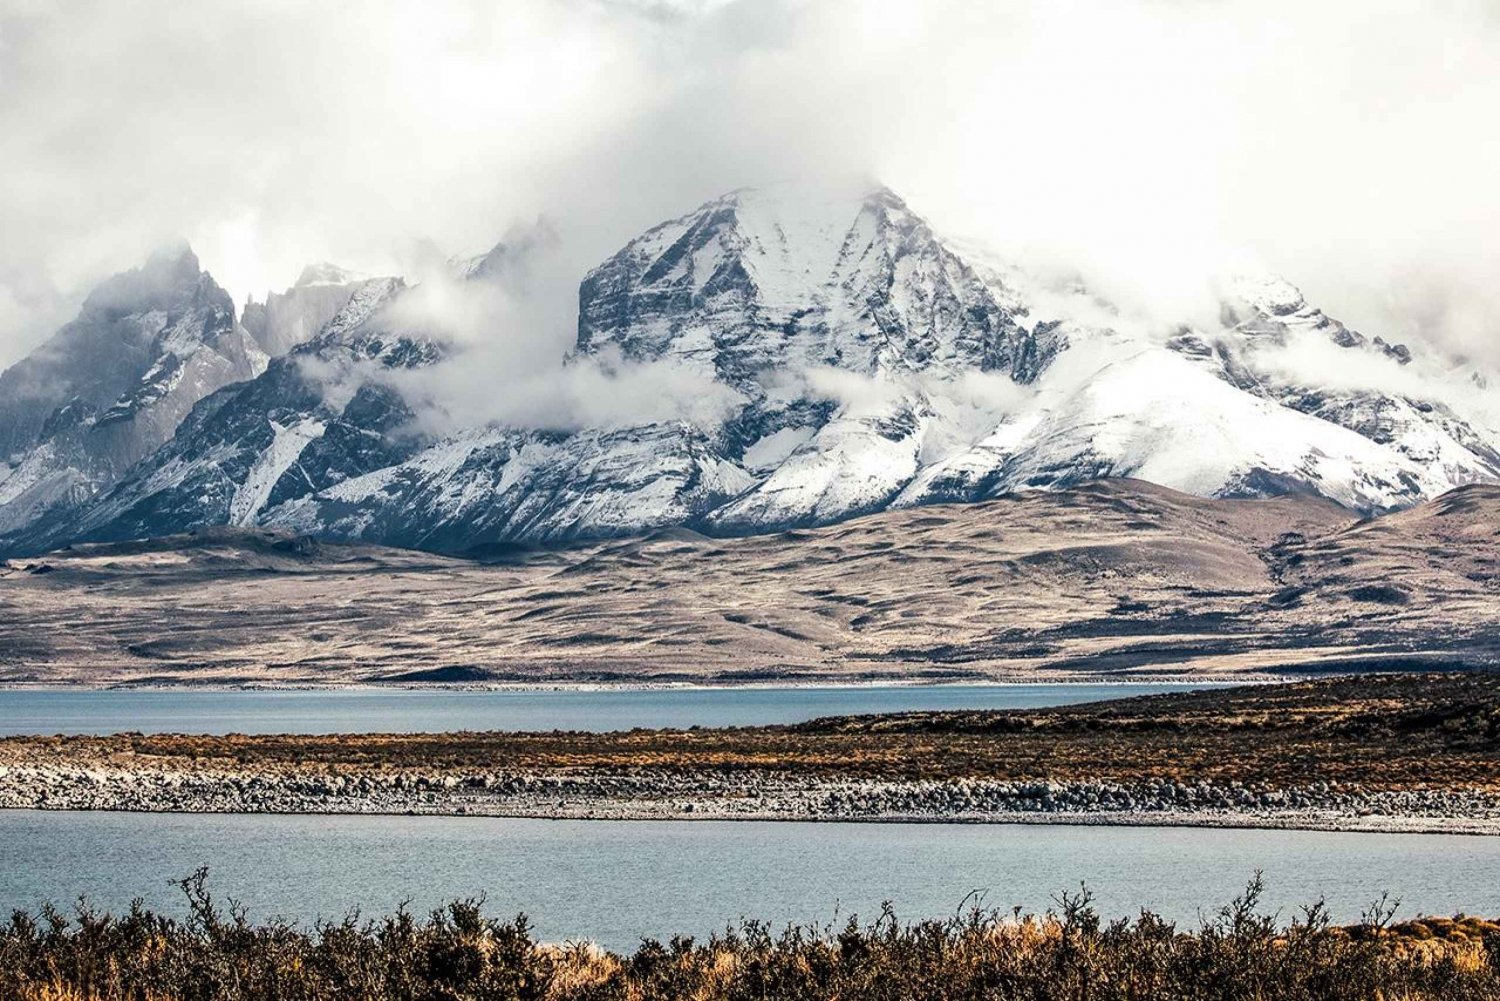 Torres del Paine: Circuito O in campeggio (7 giorni)